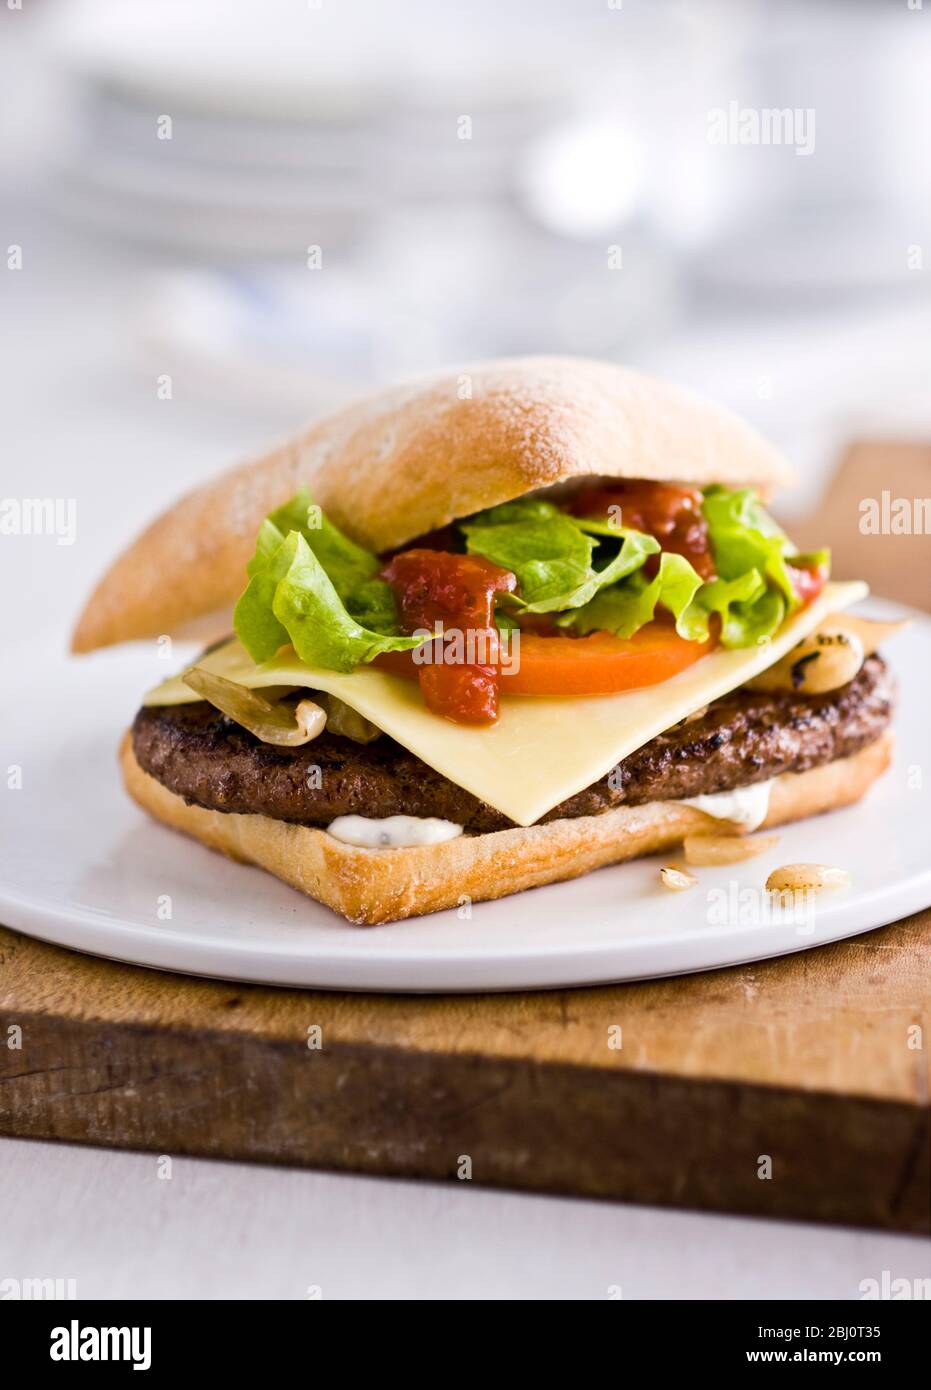 Gournet Cheeseburger mit Salat und Tomaten auf Ciabatta Brötchen auf flachem weißen Porzellanteller. - Stockfoto